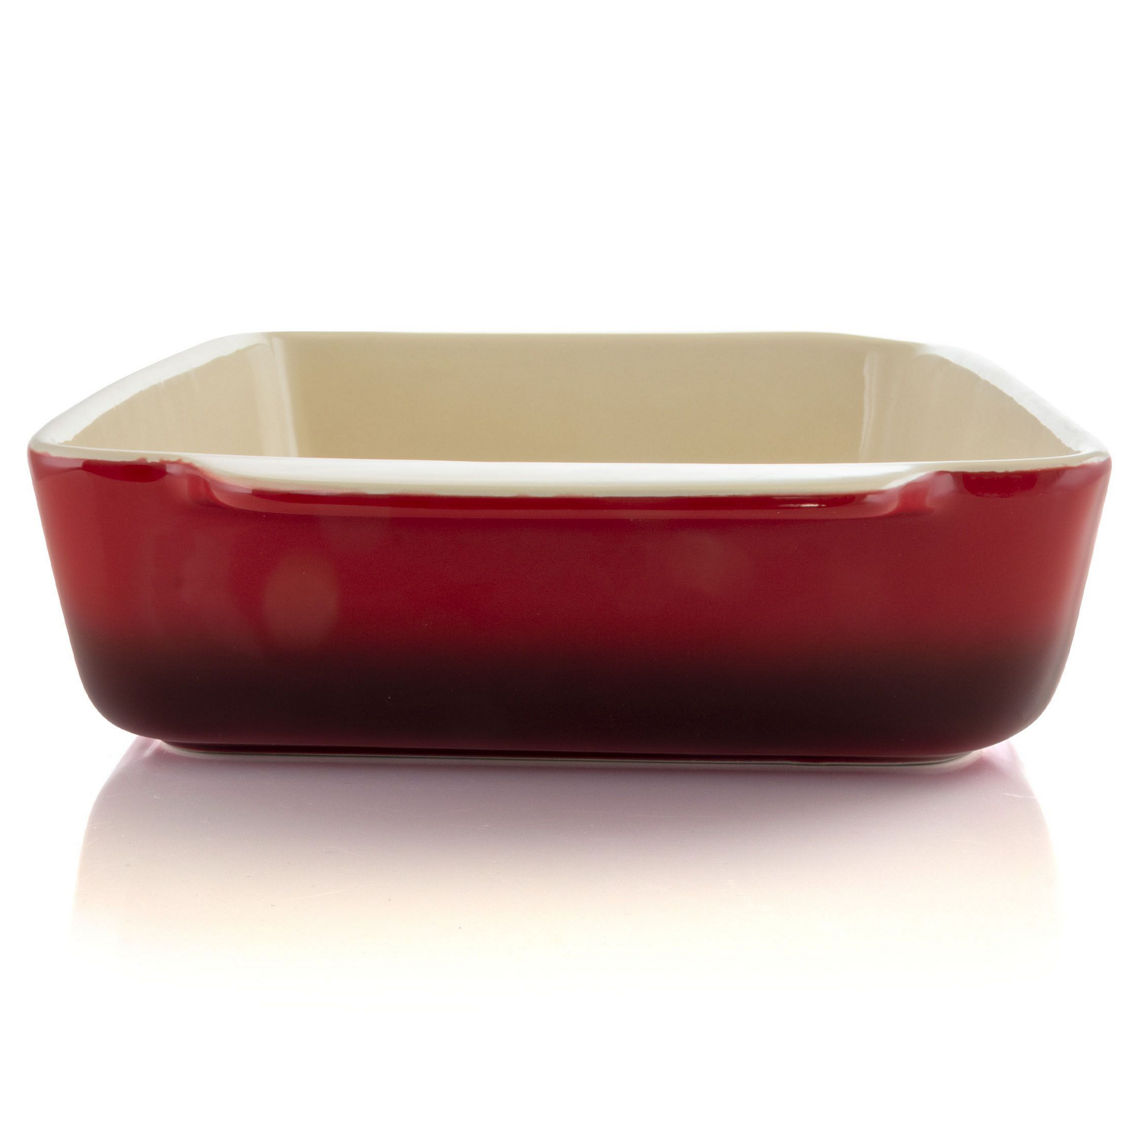 Crock Pot Artisan 5.6 Quart Stoneware Bake Pan in Red - Image 5 of 5